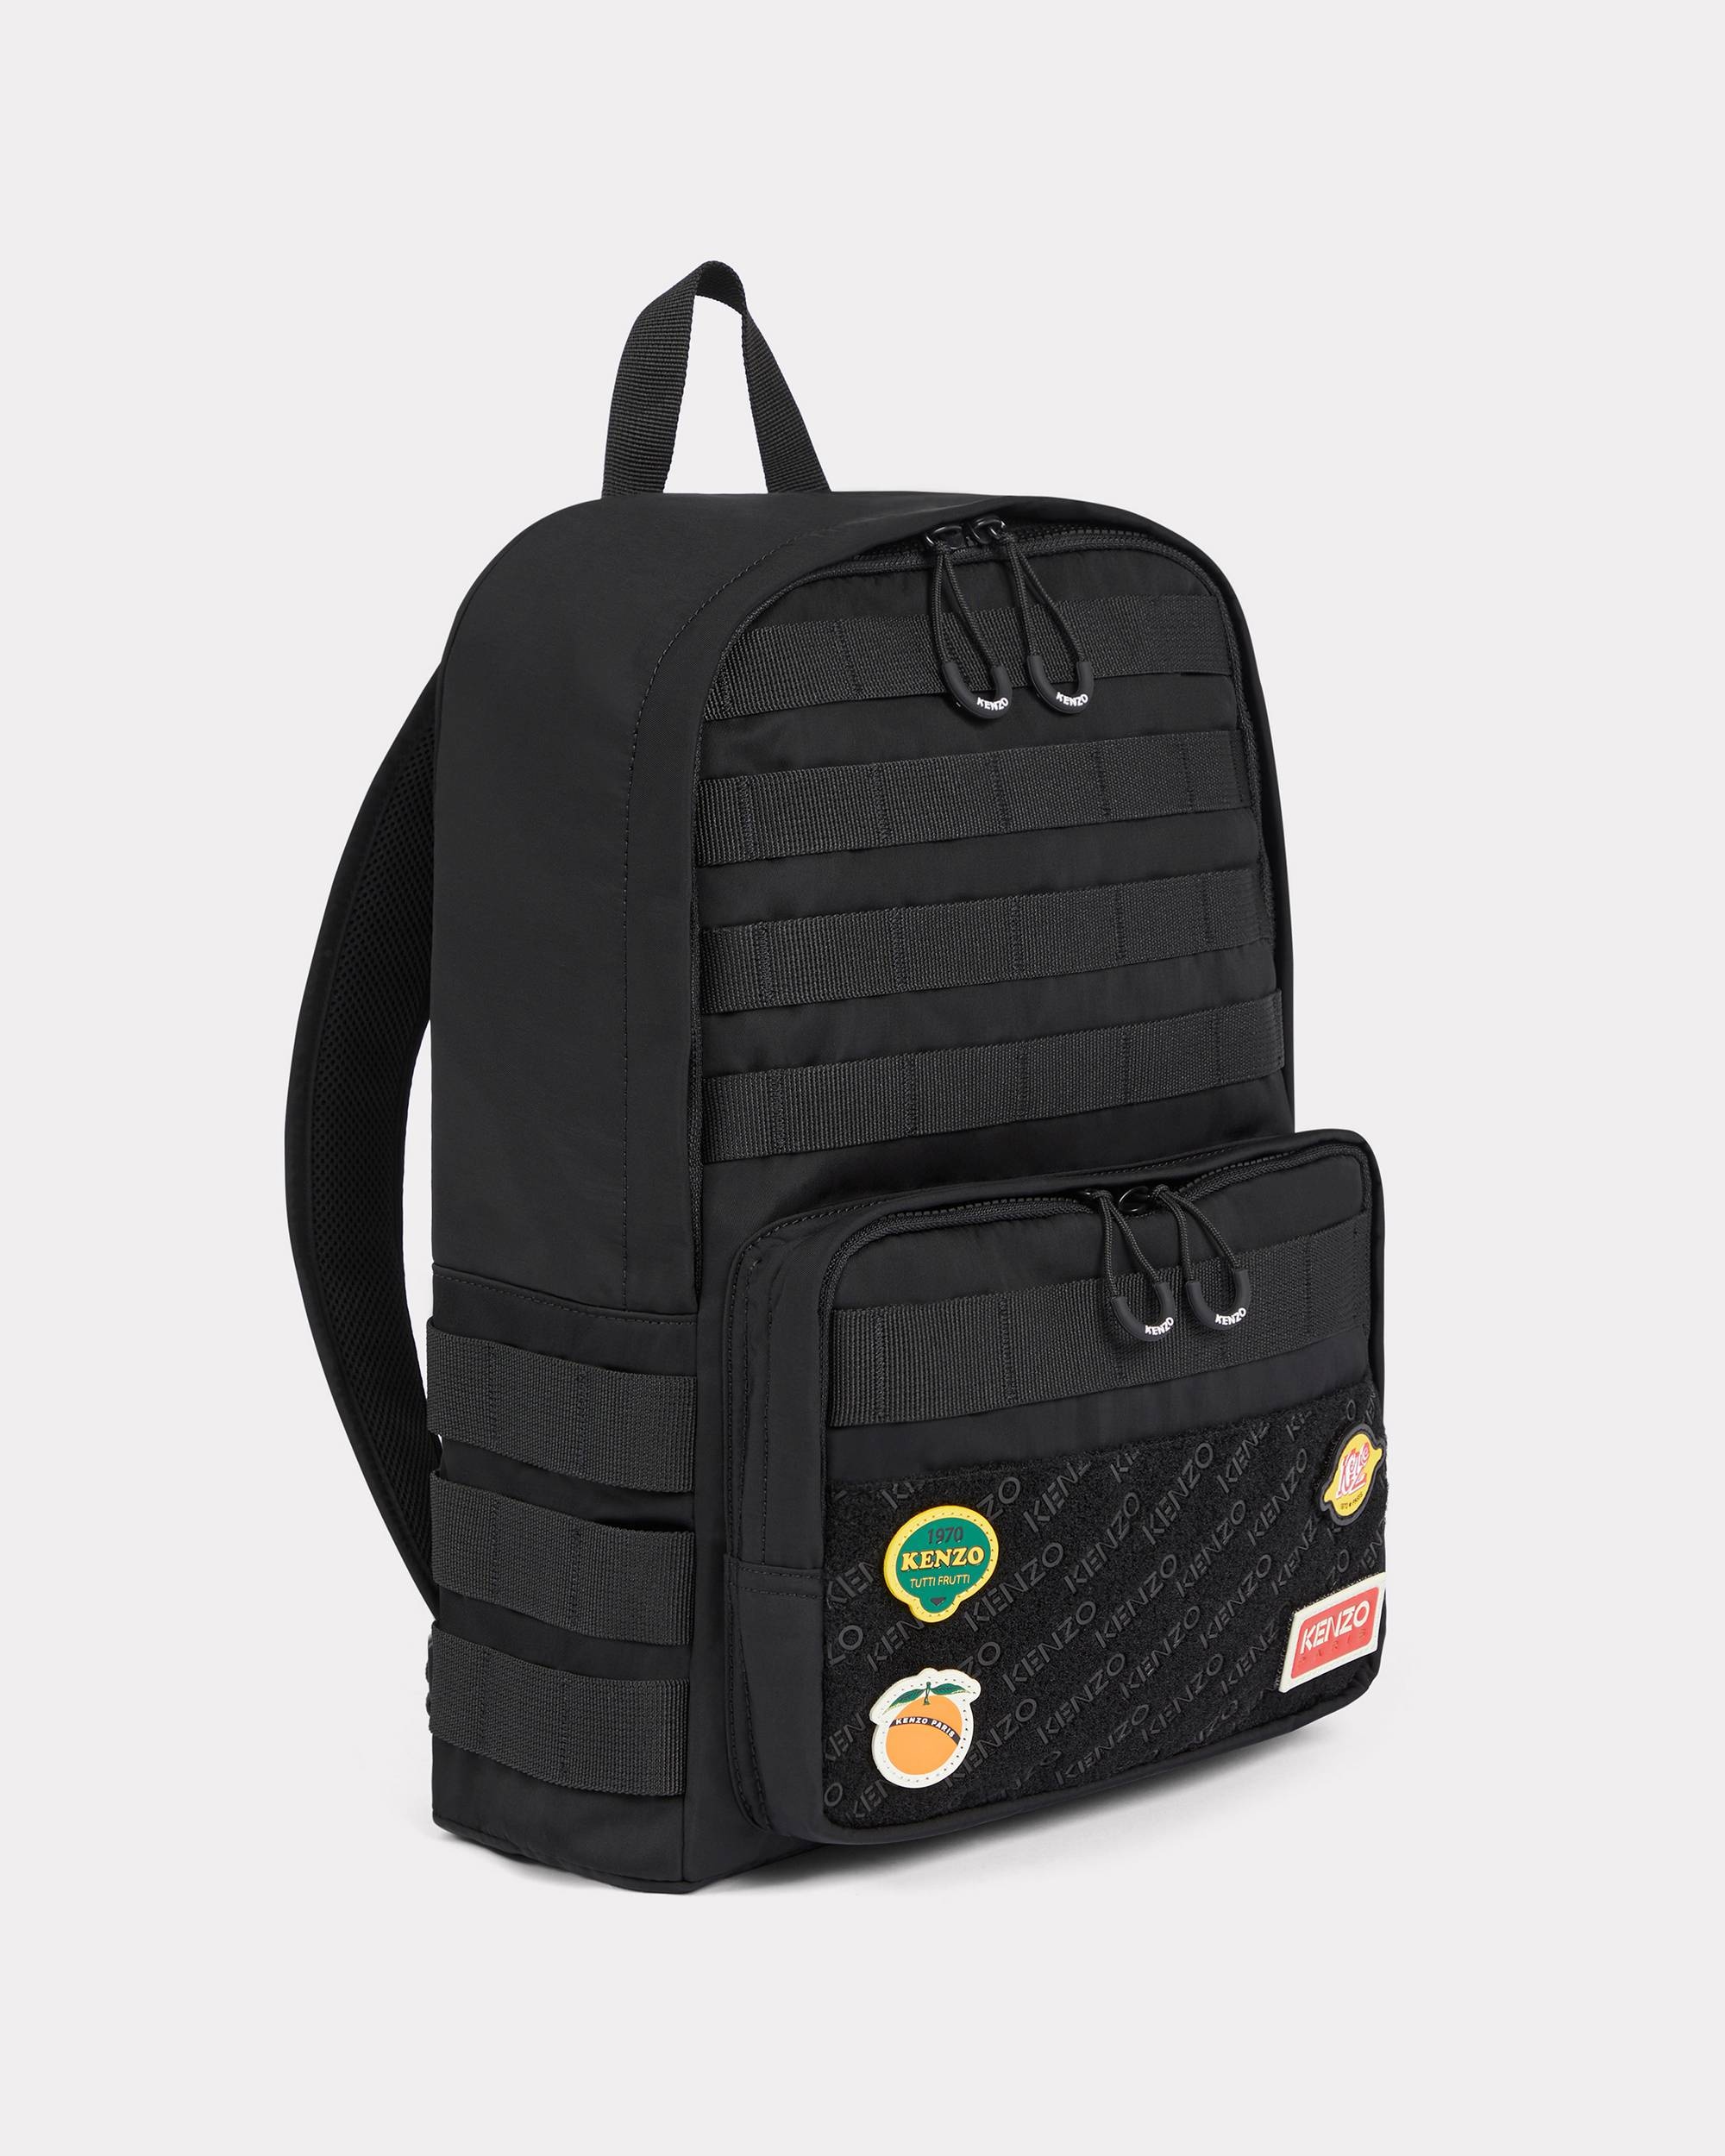 'KENZO Jungle' backpack - 1